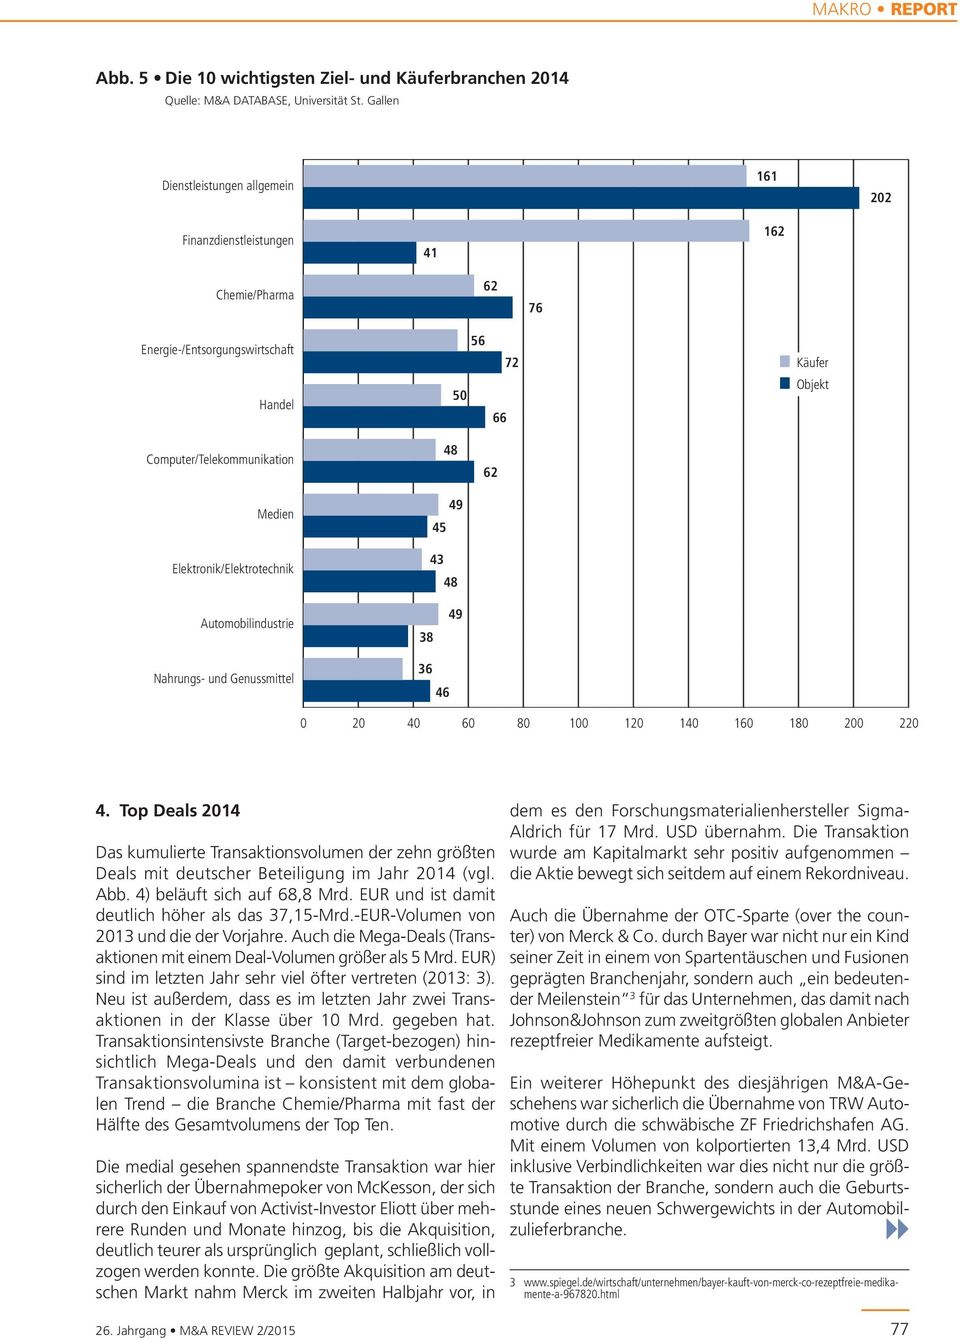 deutscher Beteiligung im Jahr 214 (vgl. Abb. 4) beläuft sich auf 68,8 Mrd. EUR und ist damit deutlich höher als das 37,15-Mrd.-EUR-Volumen von 213 und die der Vorjahre.